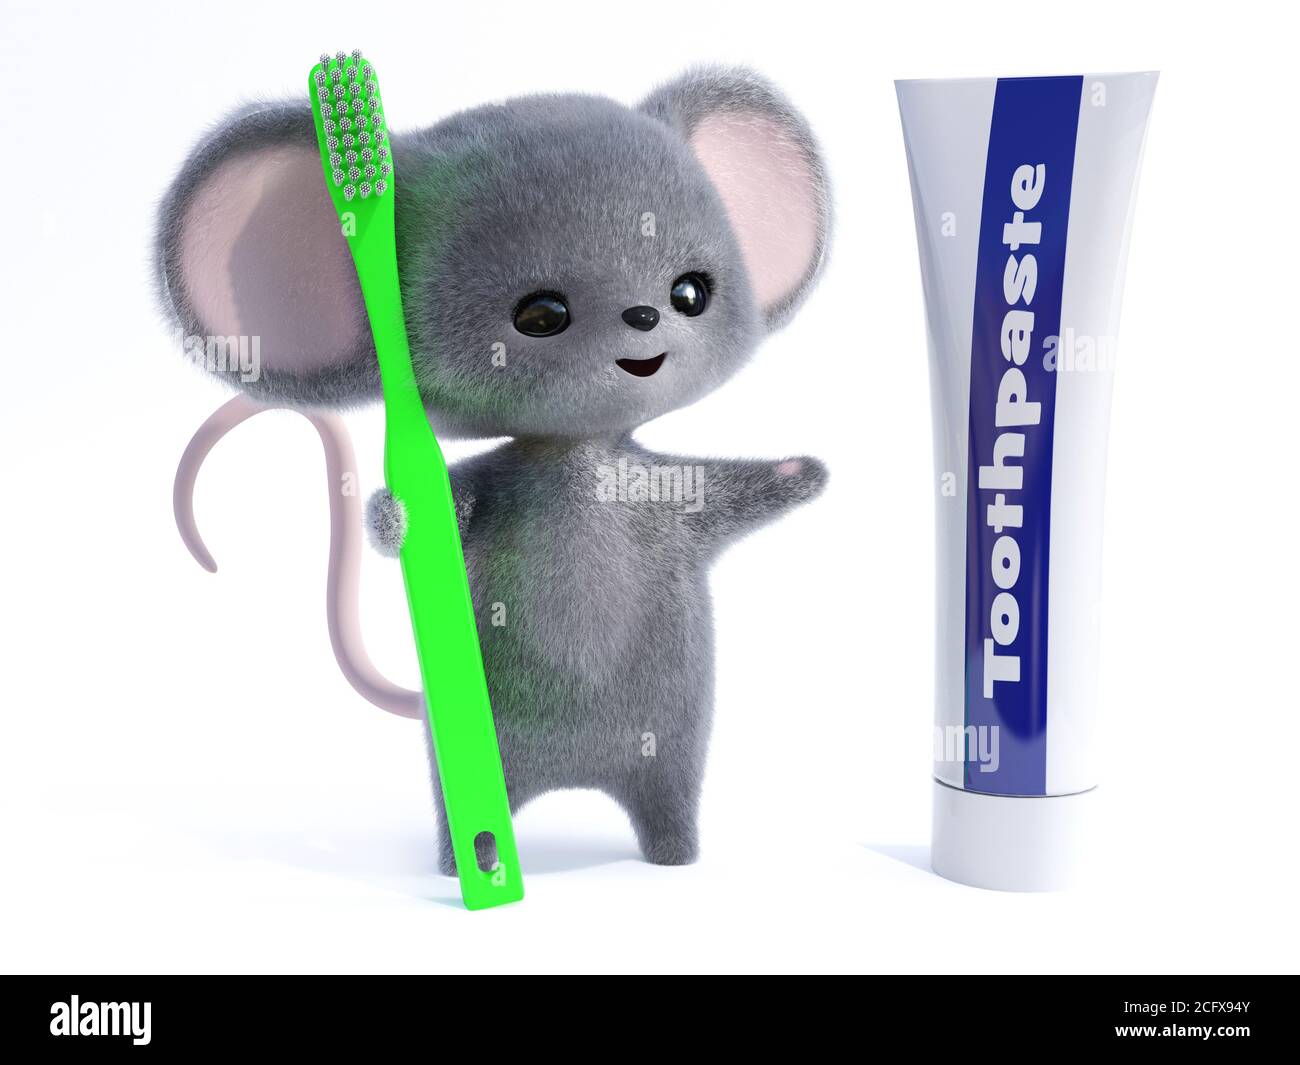 Rendu 3D d'une adorable souris à fourrure kawaii souriante tenant une brosse à dents verte très grande, regardant un tube de dentifrice géant. Prêt à brosser son tee Banque D'Images